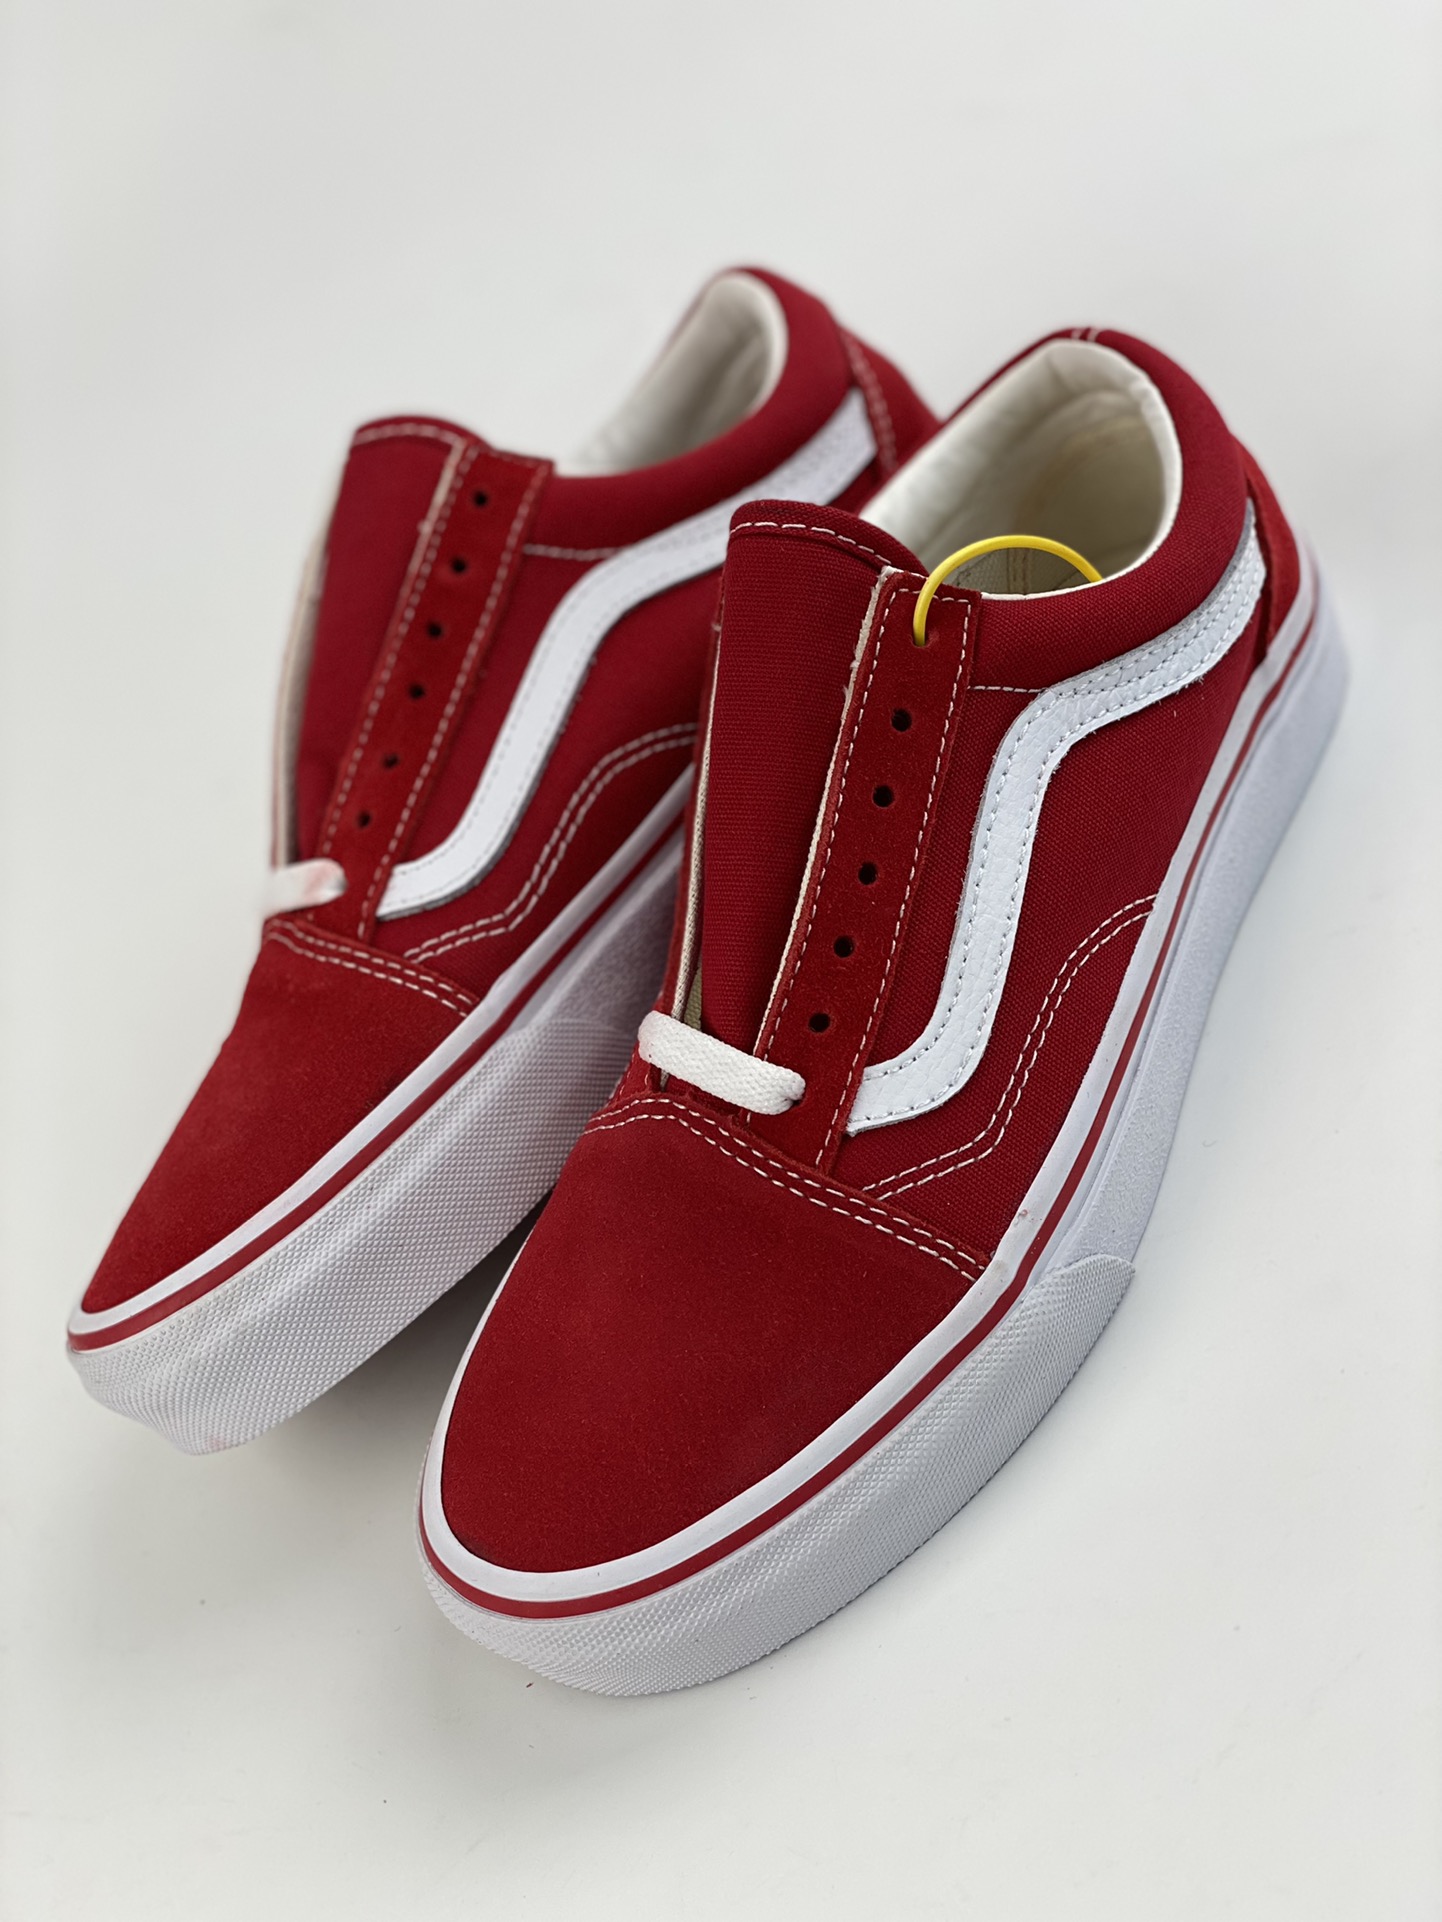 Vans Old Skool Navy lightweight low-top sneakers unisex red couple's